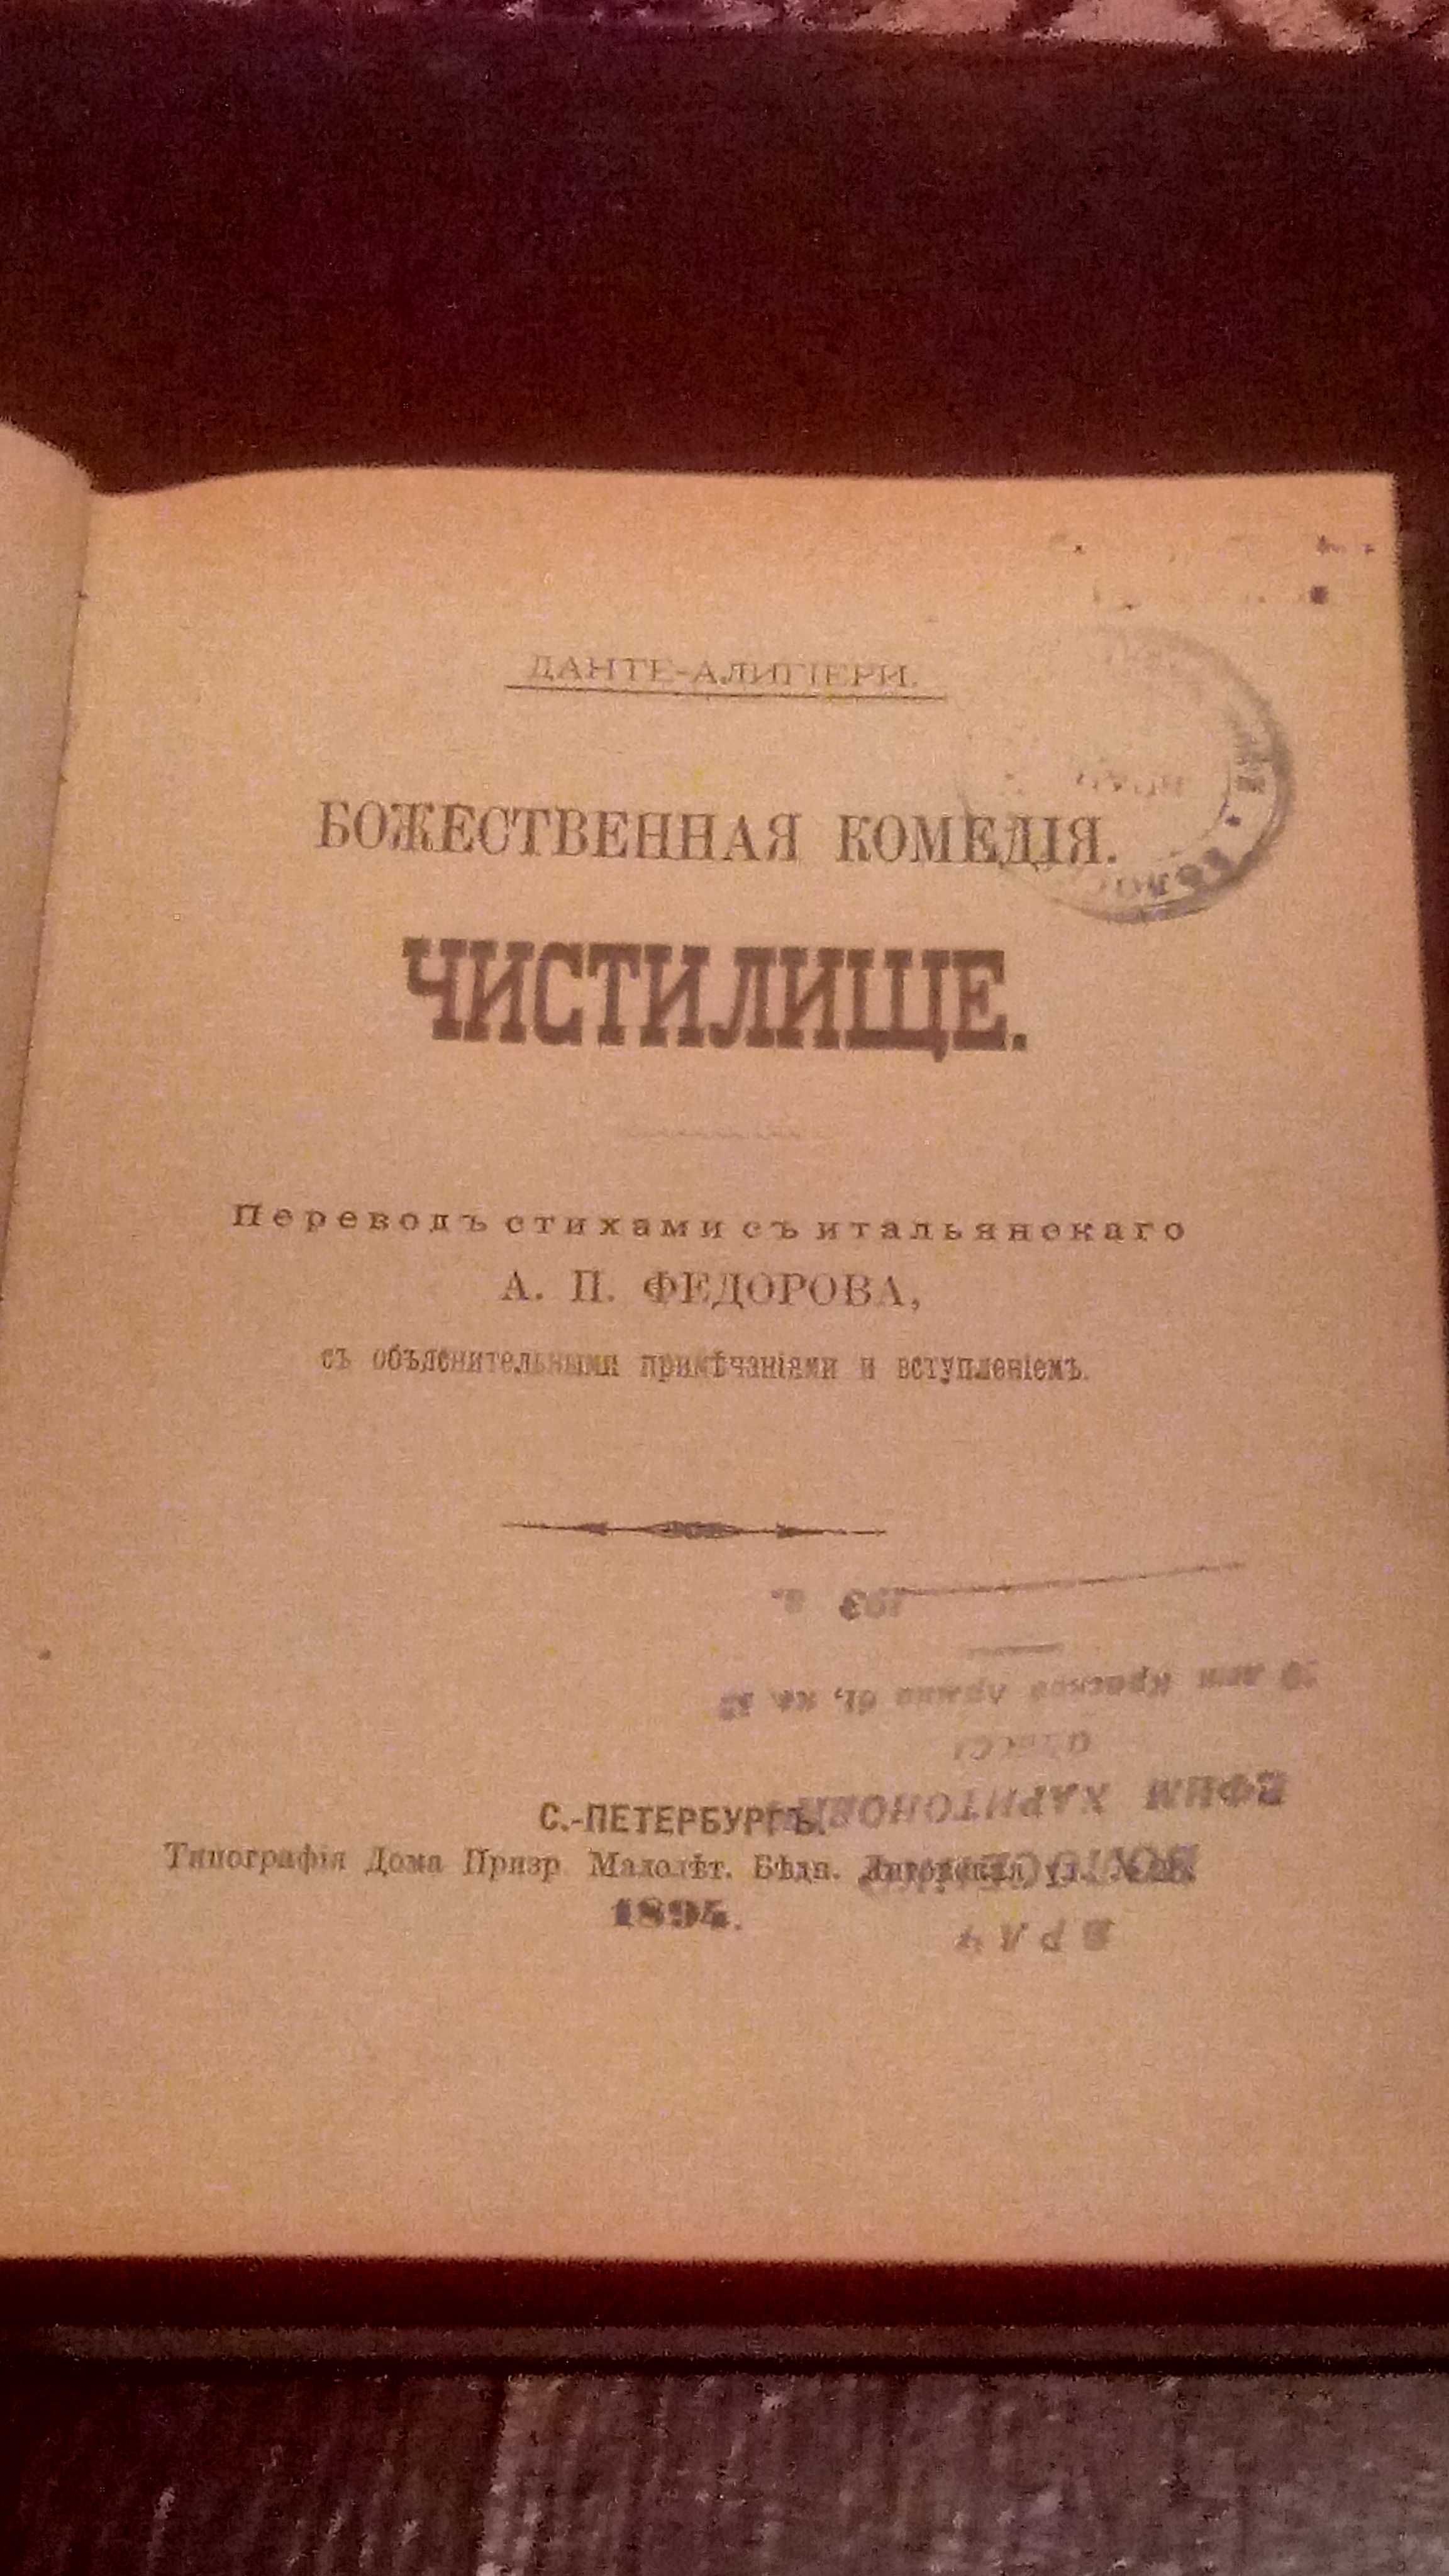 Божественная комедия "Чистилище" (1894)